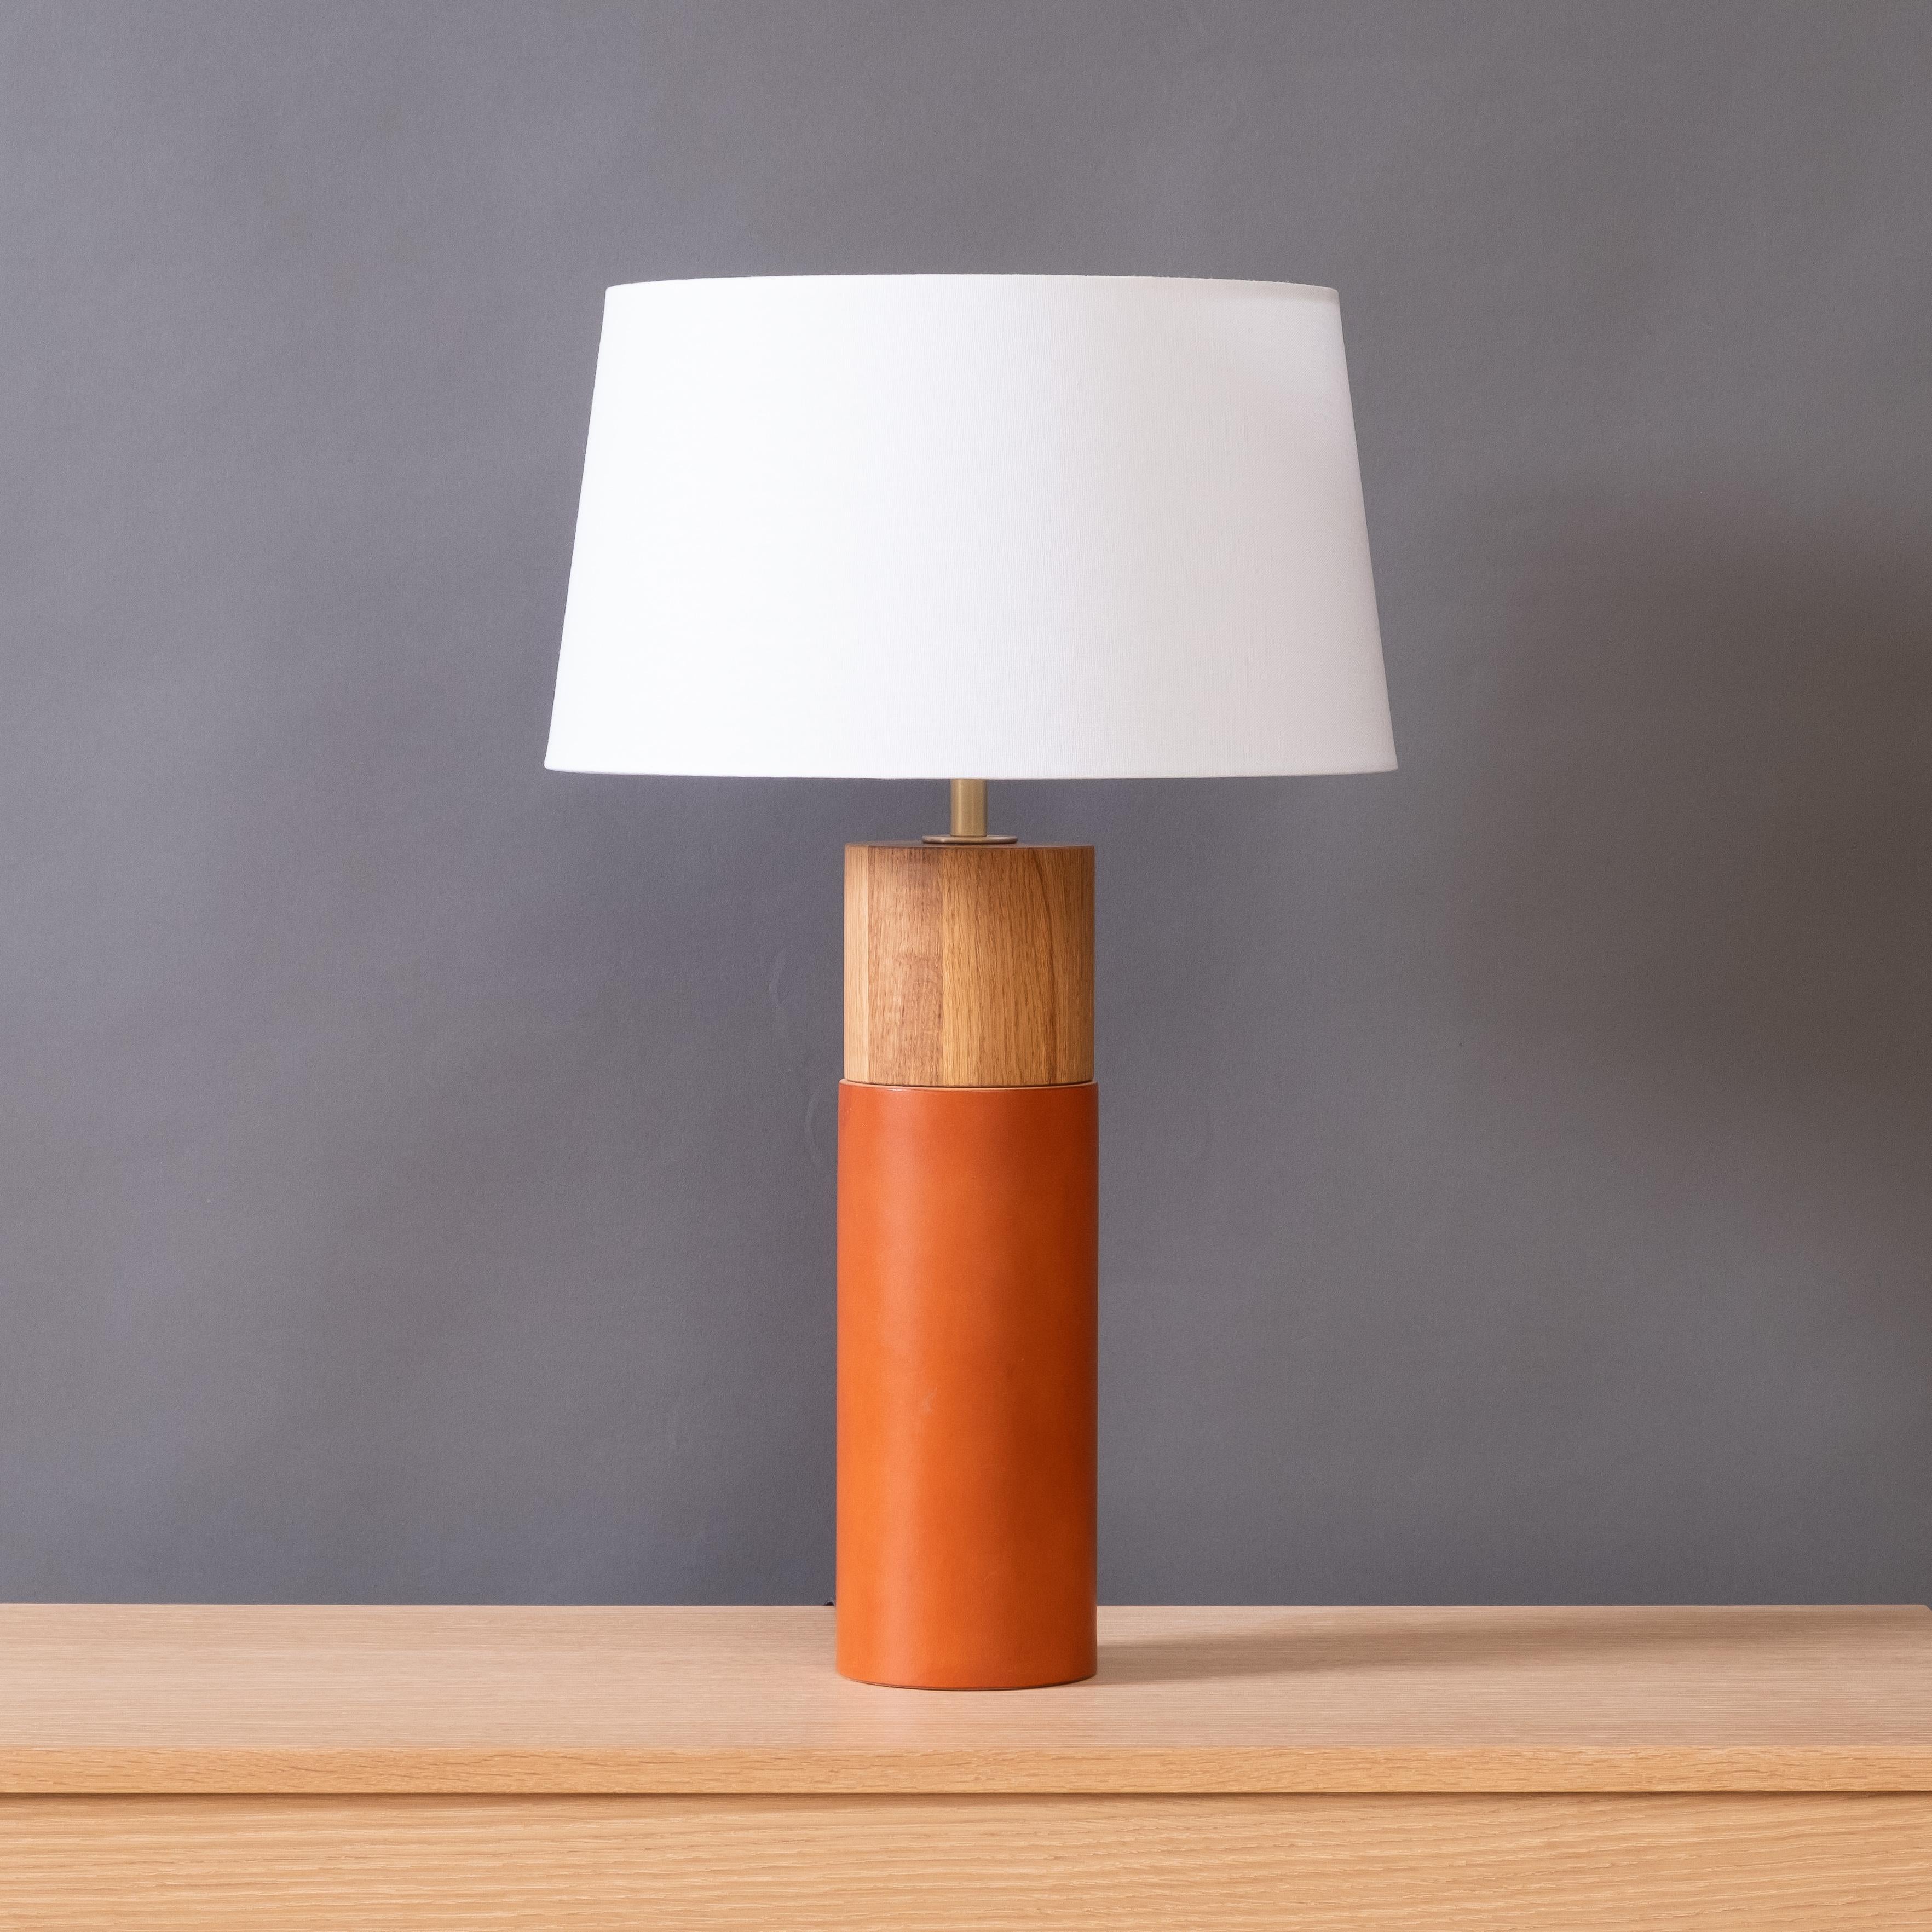 La lampe de table Capsule associe des formes minimalistes à des matériaux naturels richement texturés. Un cuir anglais épais enveloppe la partie inférieure du corps en bois tourné, contrastant avec le bois huilé exposé dans la partie supérieure. La